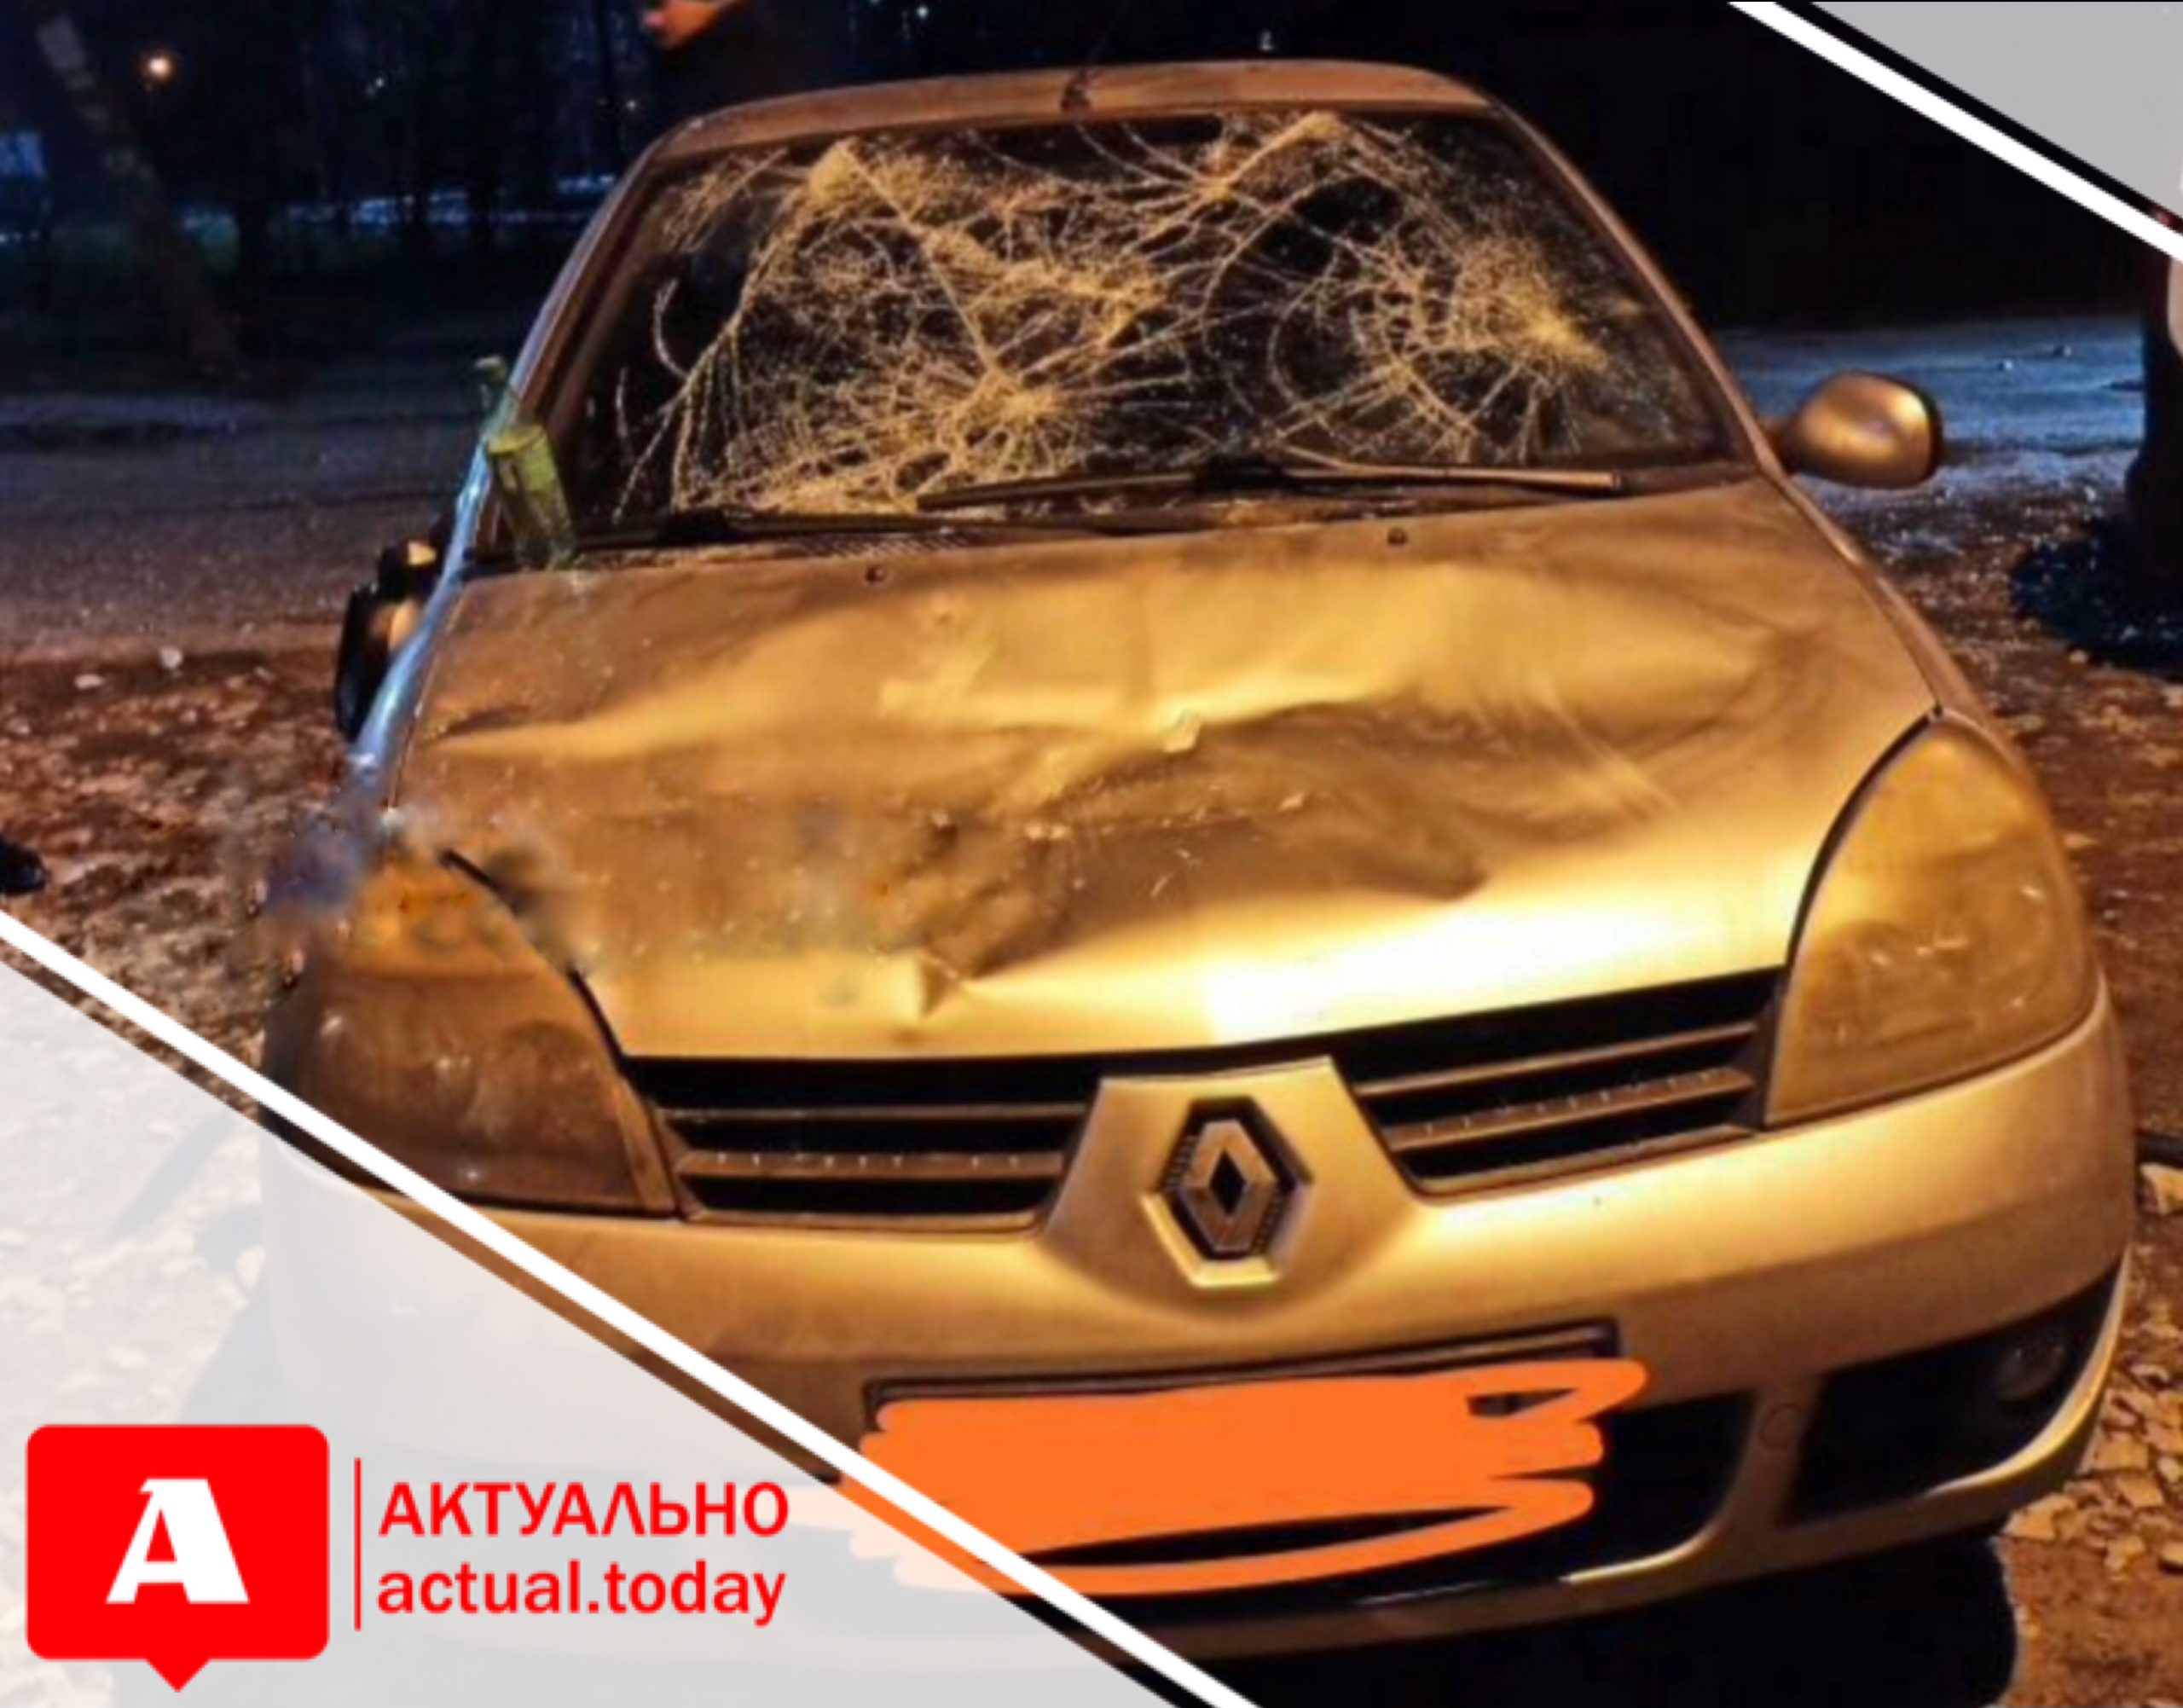 Два парня и две девушки в Запорожье повредили автомобиль: разыскиваются очевидцы (ВИДЕО)